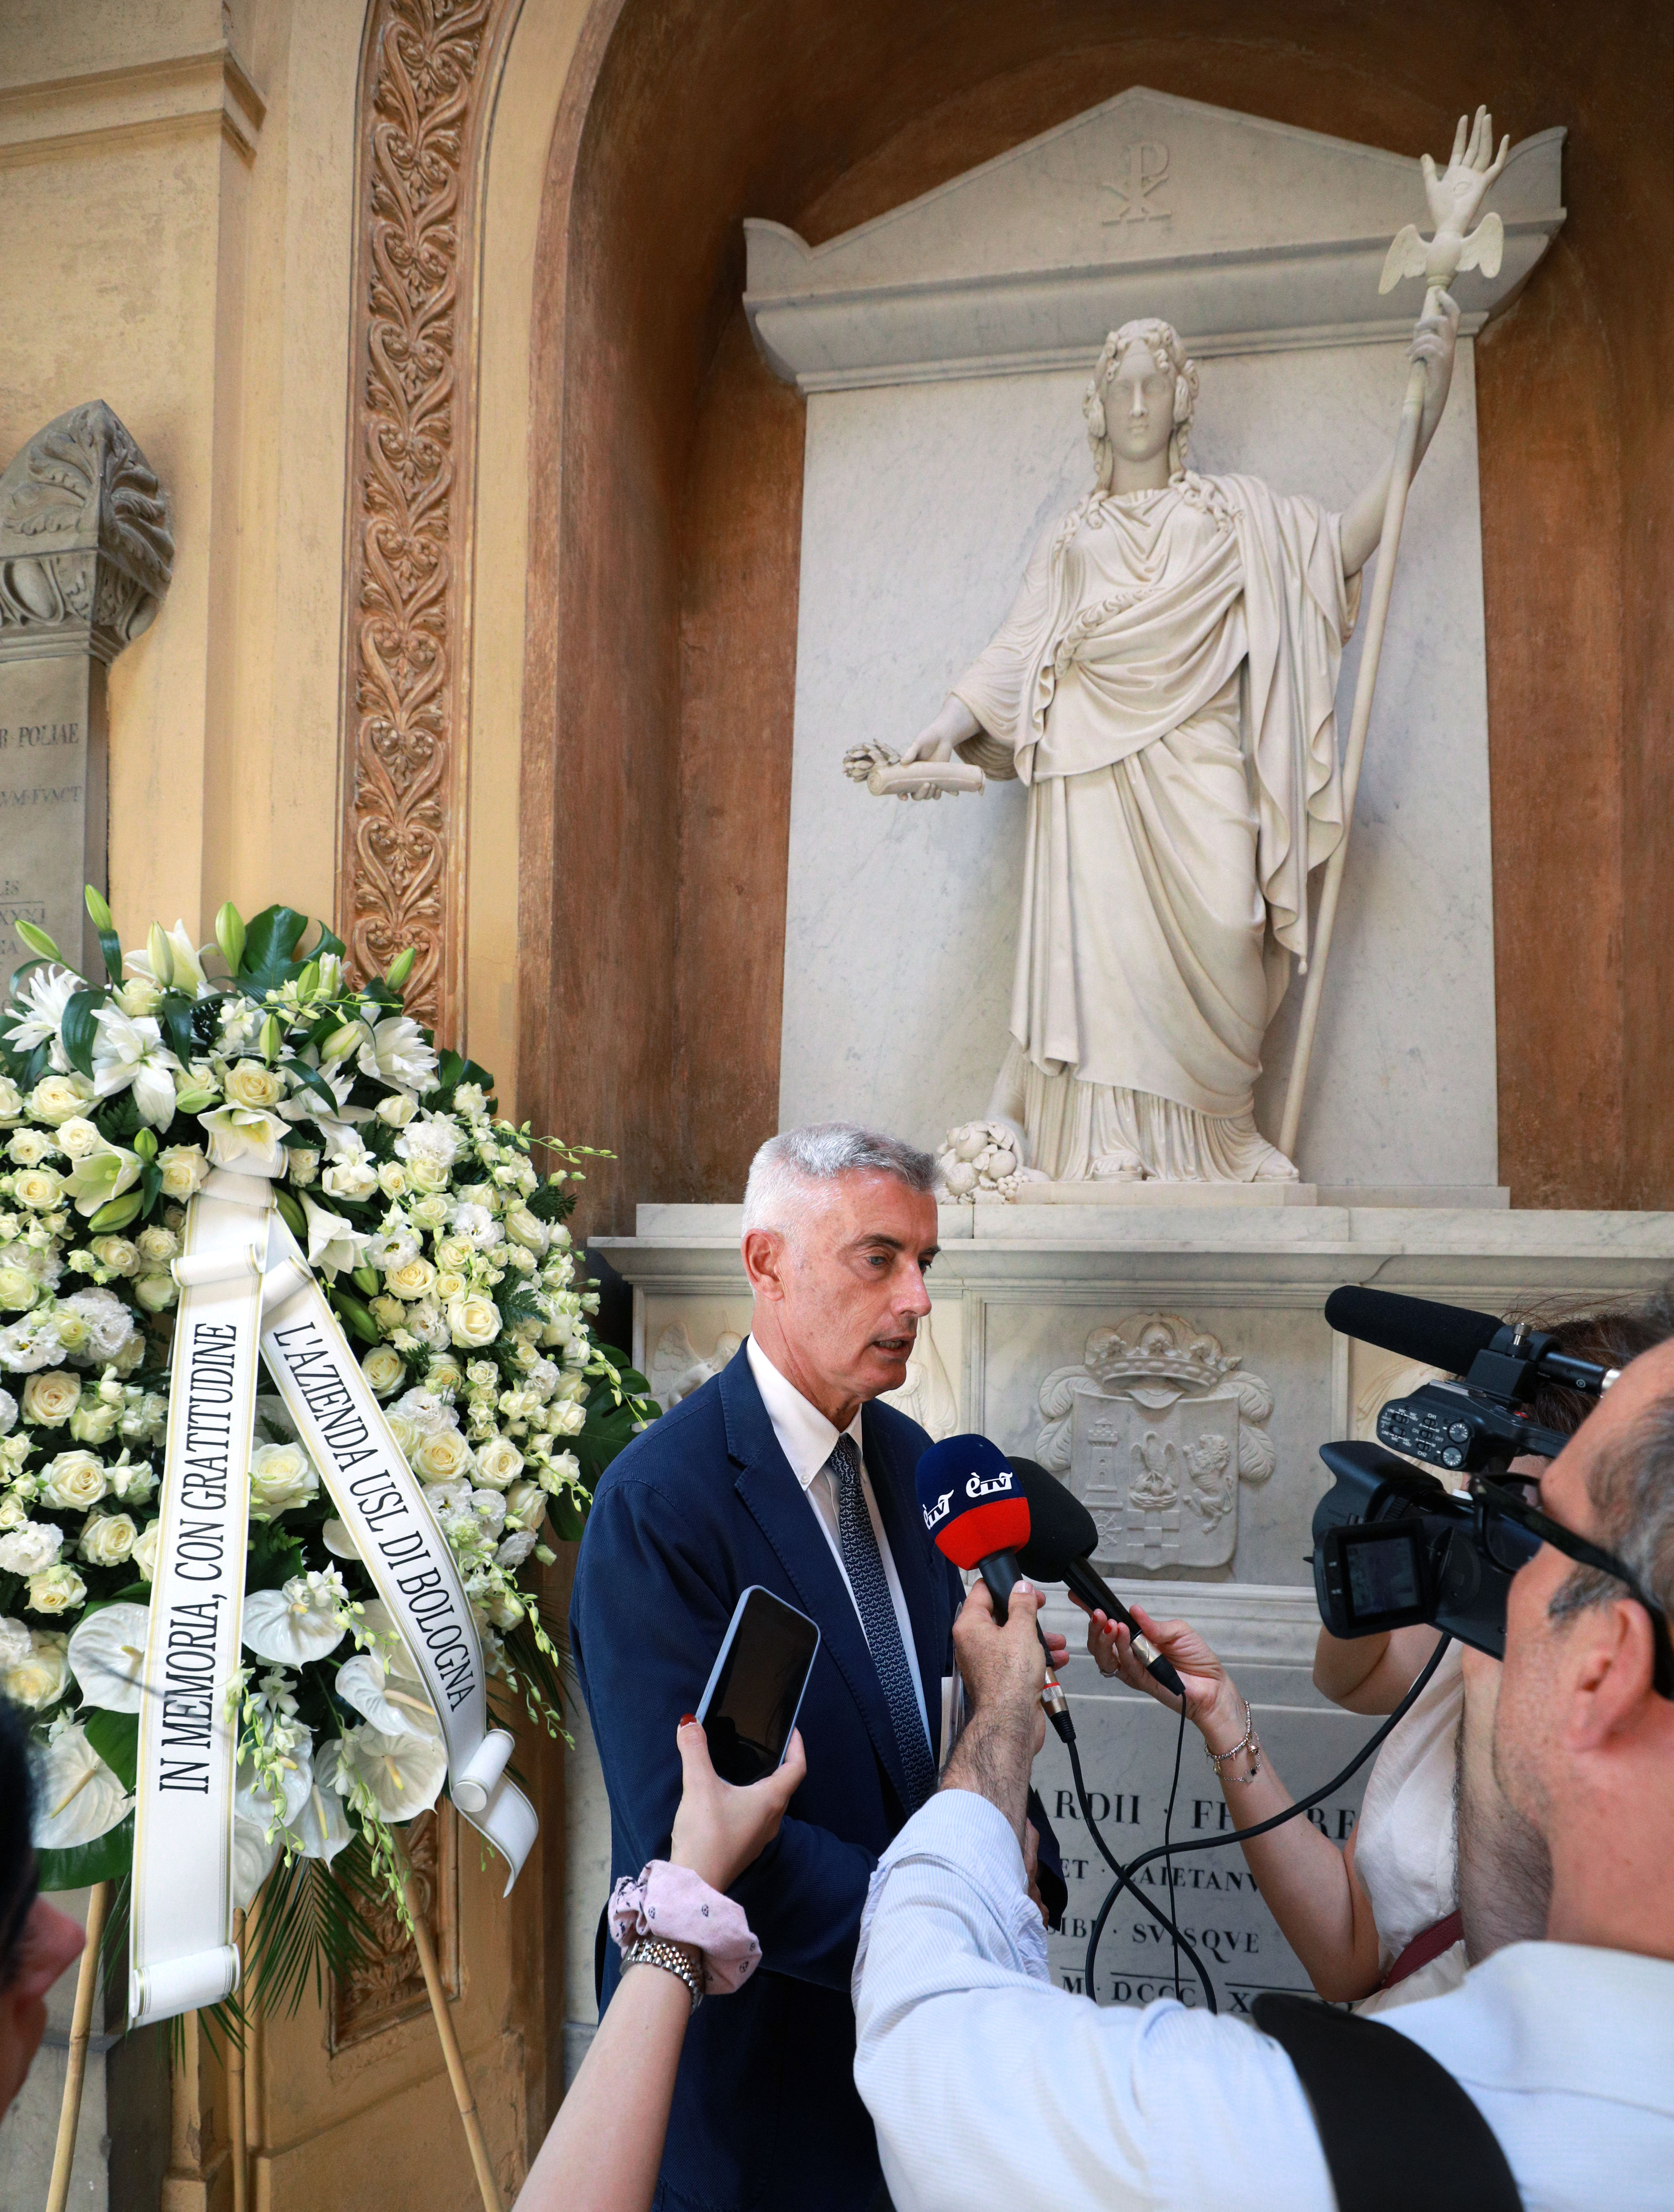 In onore del centenario della morte del marchese Carlo Alberto Pizzardi, presentazione alla stampa del restauro della tomba monumentale di famiglia presso il Cimitero Monumentale della Certosa